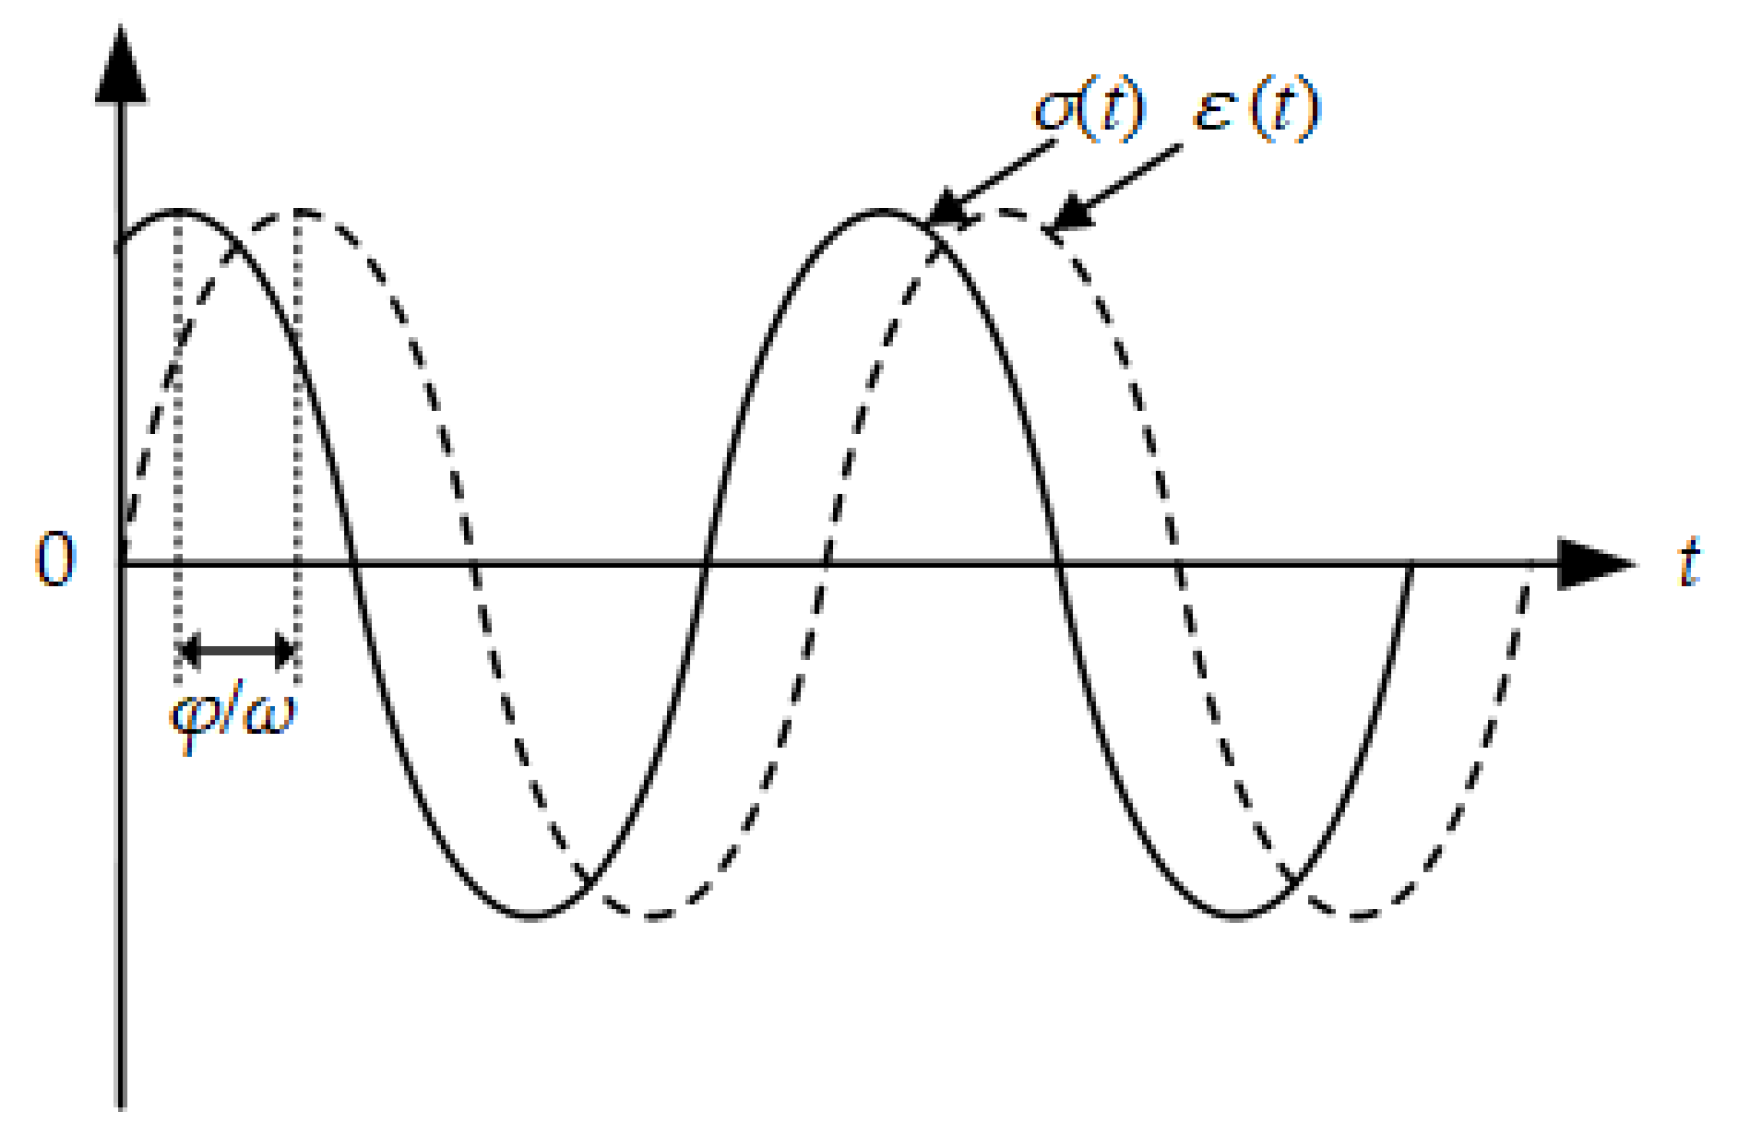 Master curve, μ sp vs C [μ], for NS (•), 50D (□) 90D